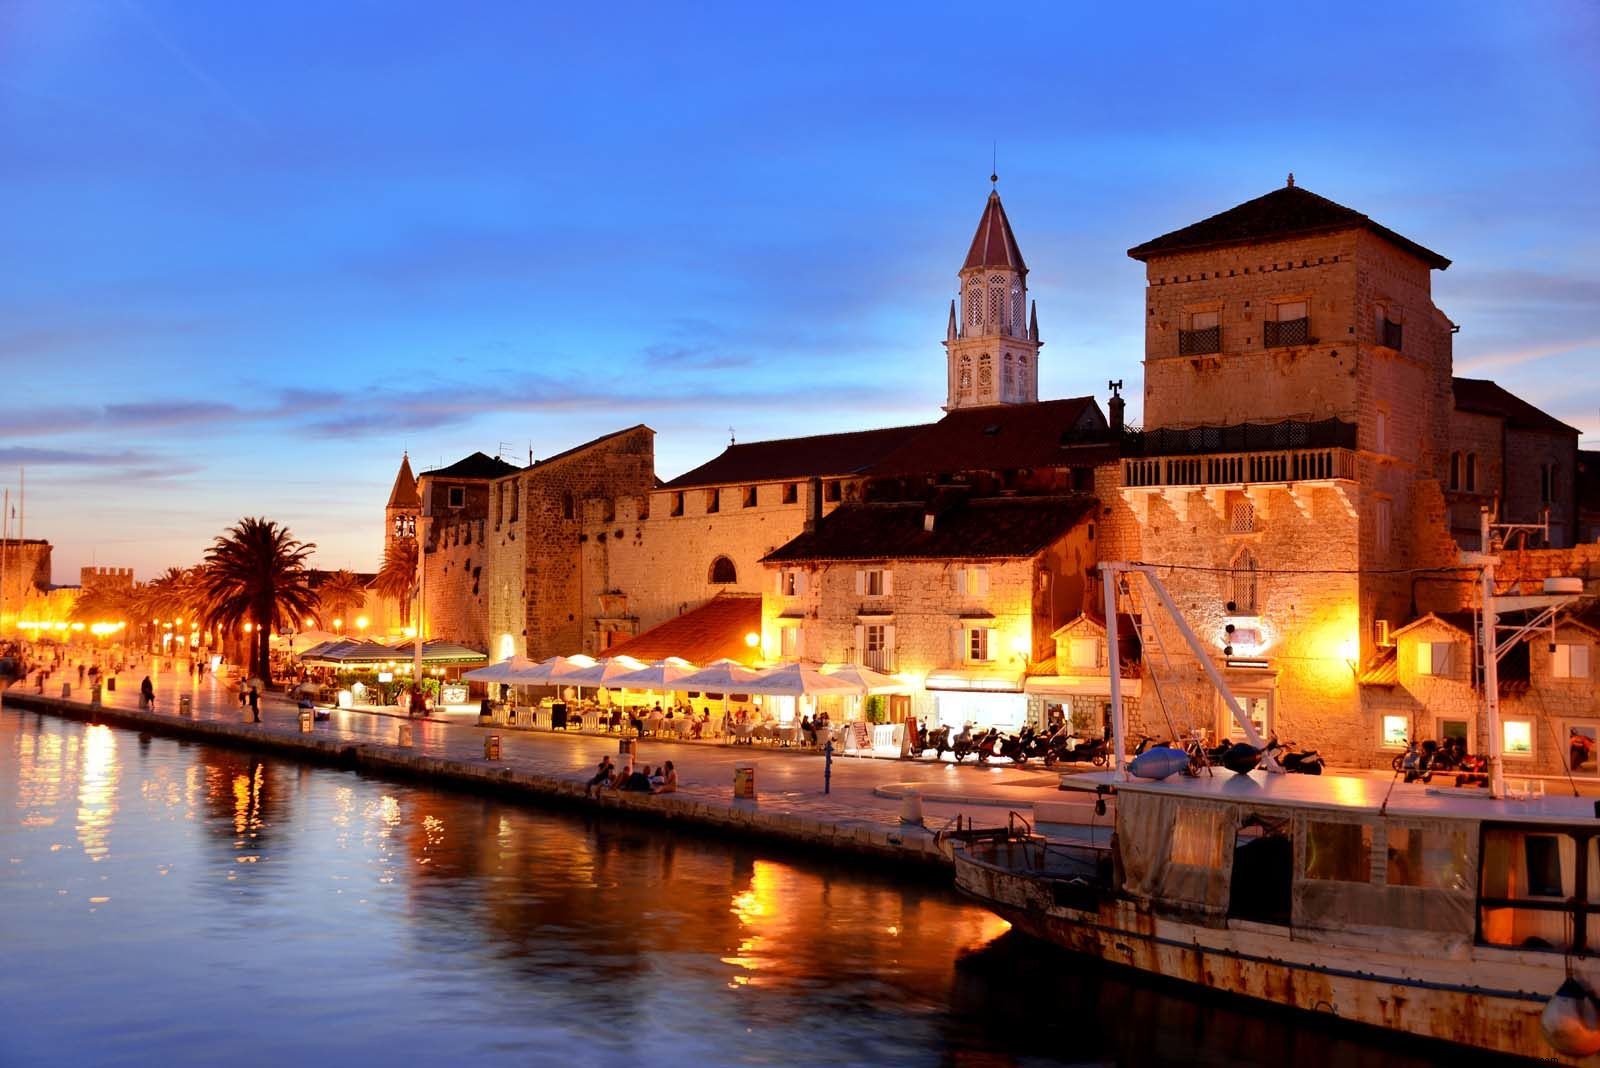 Belle Croatie - Les 20 meilleures choses à voir et à faire